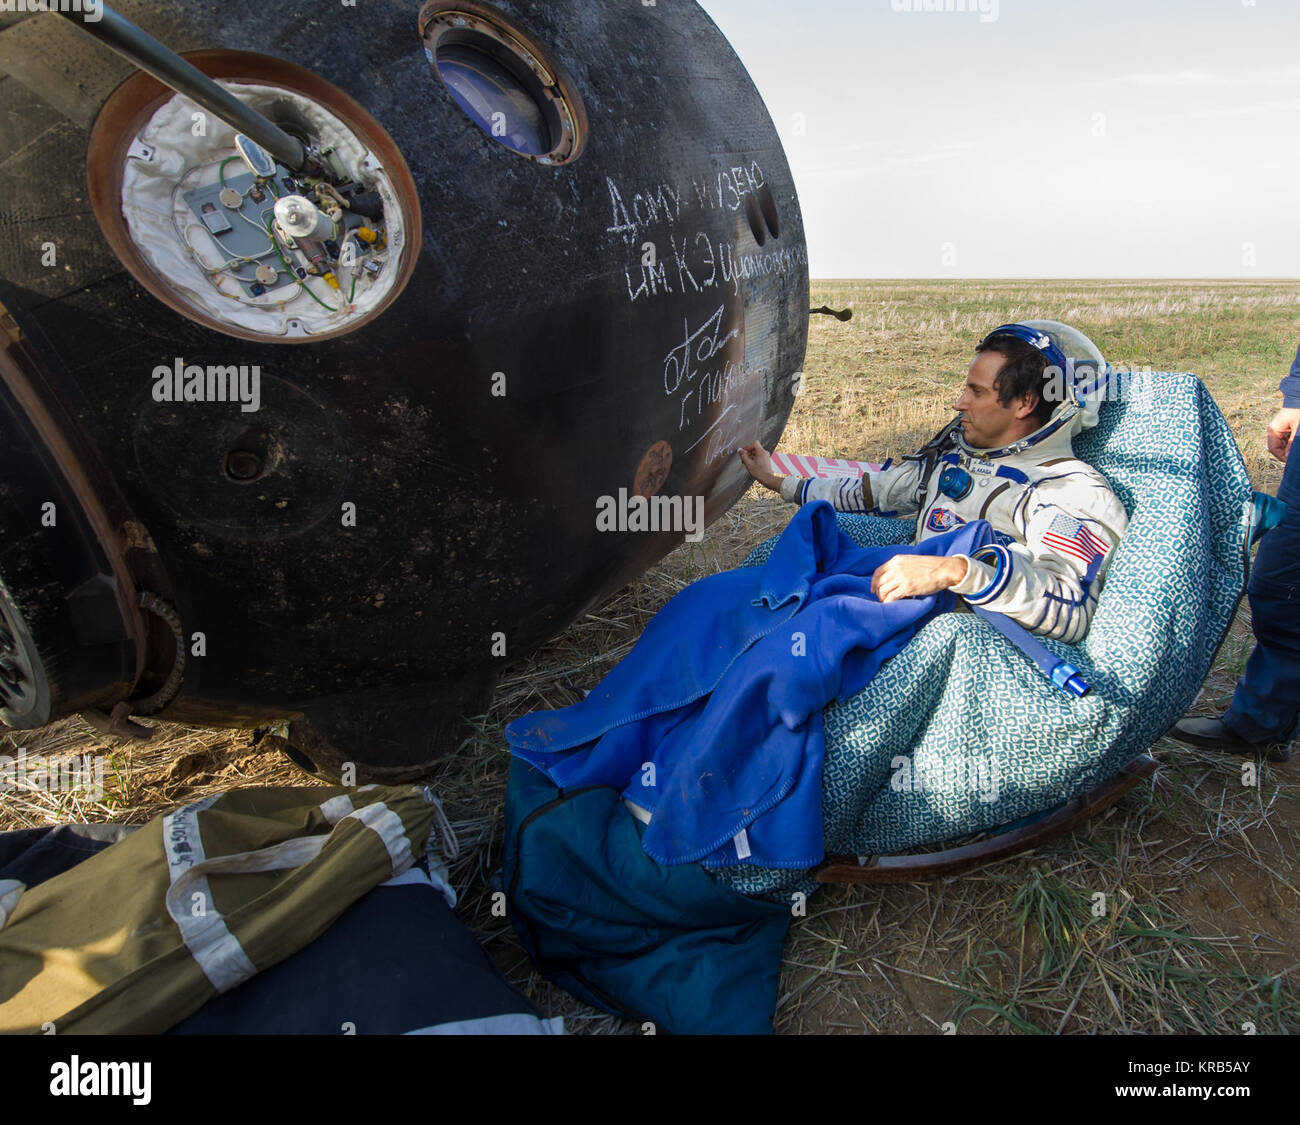 Expedition 32 NASA tecnico di volo segni il lato della sua Soyuz TMA-04M navicelle dopo aver atterrato con i suoi compagni di equipaggio Expedition 32 comandante Gennady Padalka e tecnico di volo Sergei Revin della Russia in una remota area vicino alla città di Arkalyk, Kazakistan, lunedì 7 settembre 17, 2012. Acaba, Padalka e Revin restituito da cinque mesi a bordo della Stazione spaziale internazionale dove sono serviti come membri della spedizione 31 e 32 equipaggi. Photo credit: (NASA/Carla Cioffi) Soyuz TMA-04M Joe Acaba segni la capsula Soyuz Foto Stock